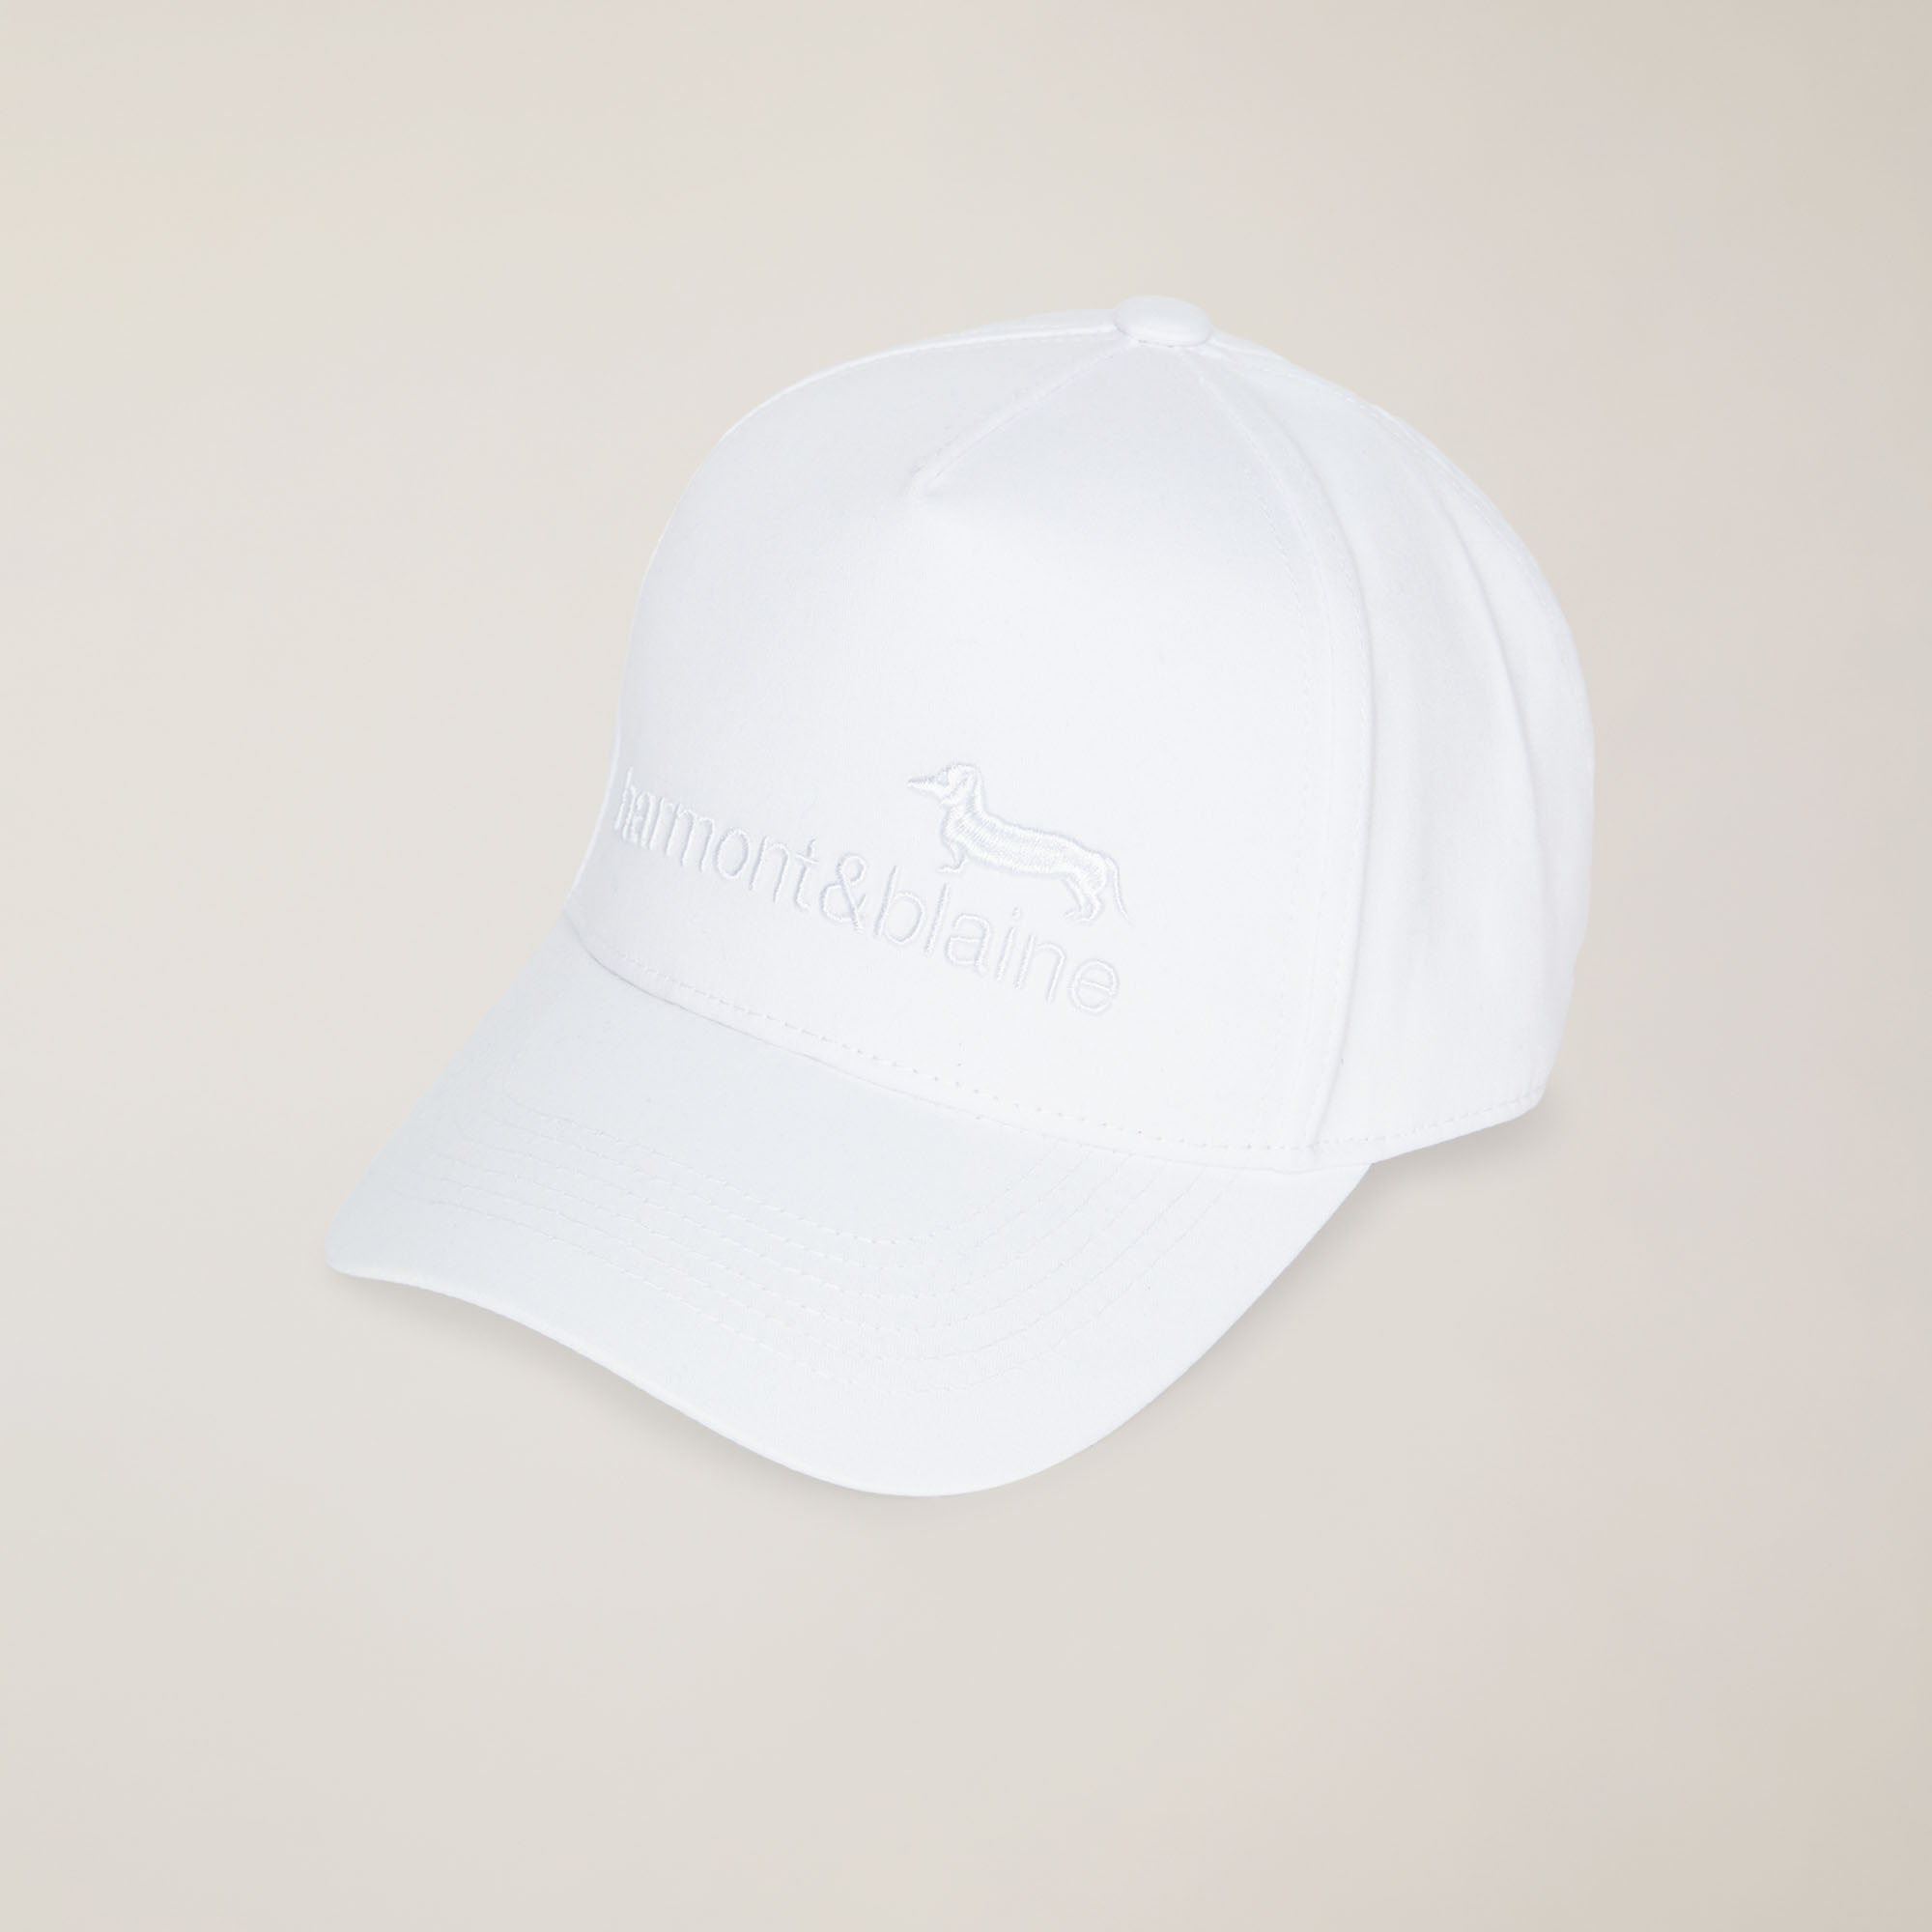 Baseball Hat with Logo, White, large